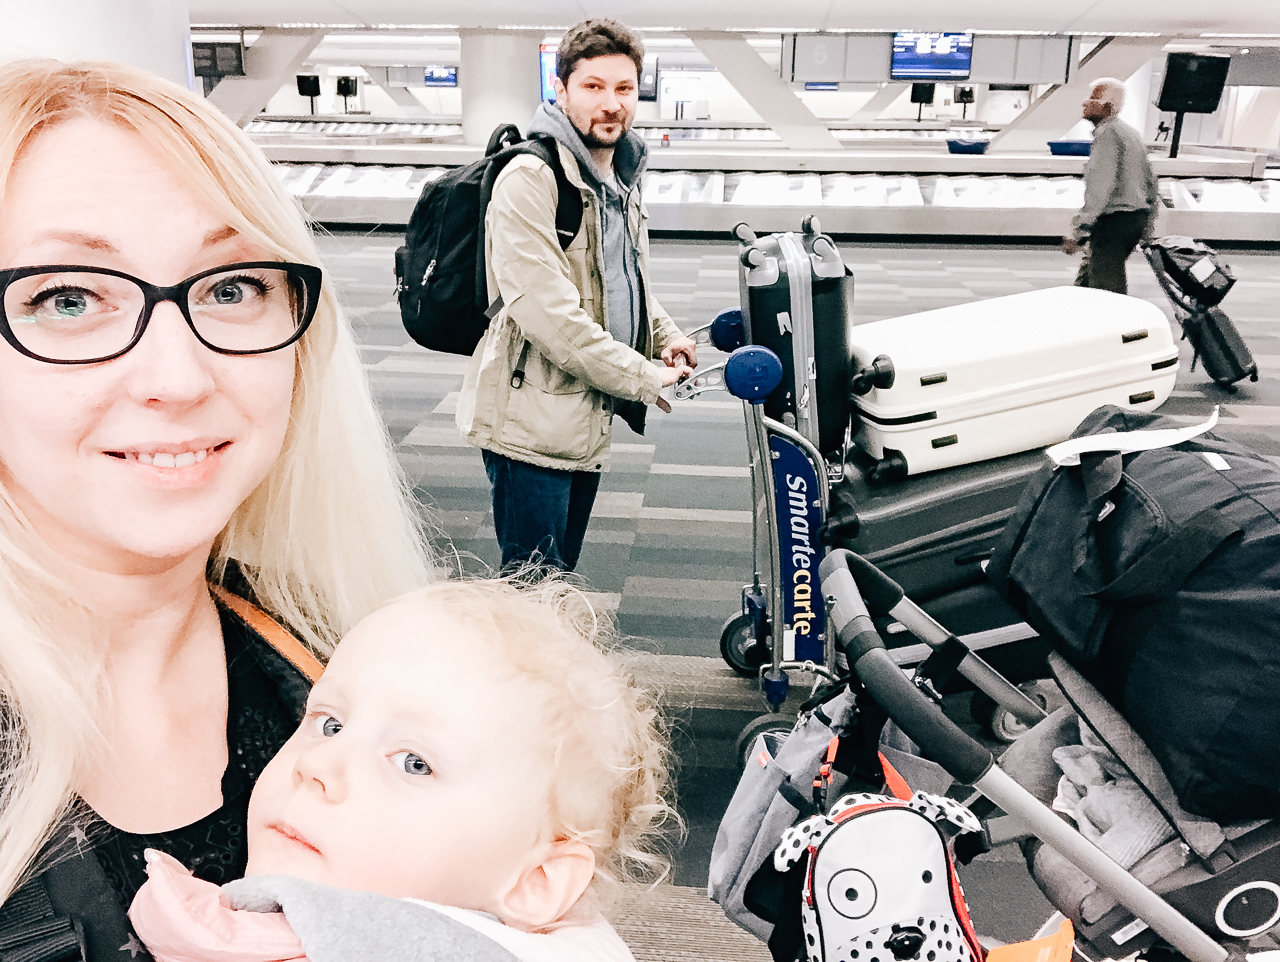 Jak przetrwaliśmy 17 godzin podróży i lot do USA z niespełna 2 letnim dzieckiem? Wskazówki, zabawki, ważne informacje.